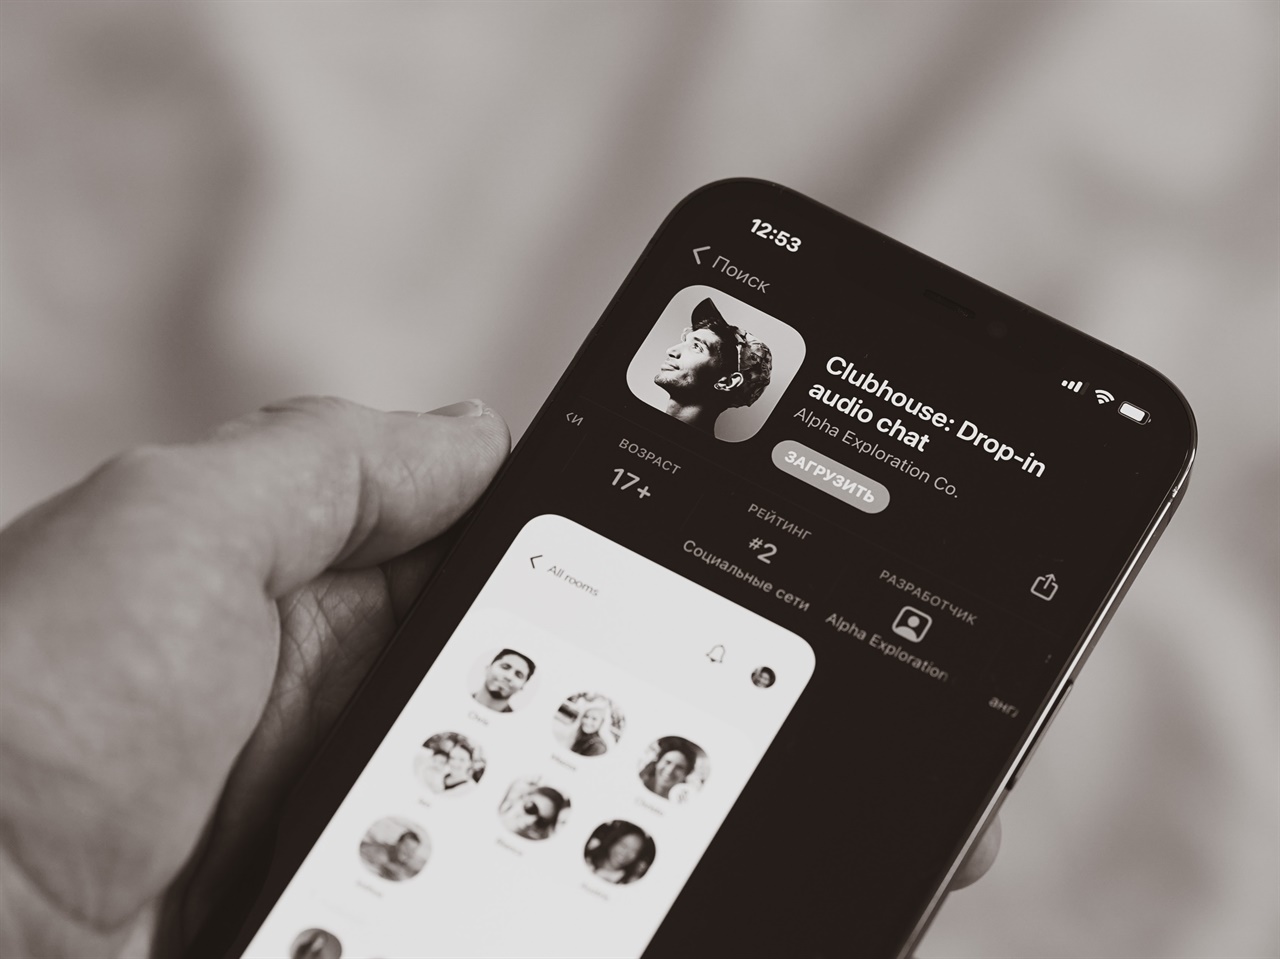 클럽하우스는 2020년 3월 출시된 음성 소셜미디어로, 영상이나 글 등은 사용할 수 없고 음성으로만 대화한다. 아직은 애플의 ios 이용자만 가능하다.